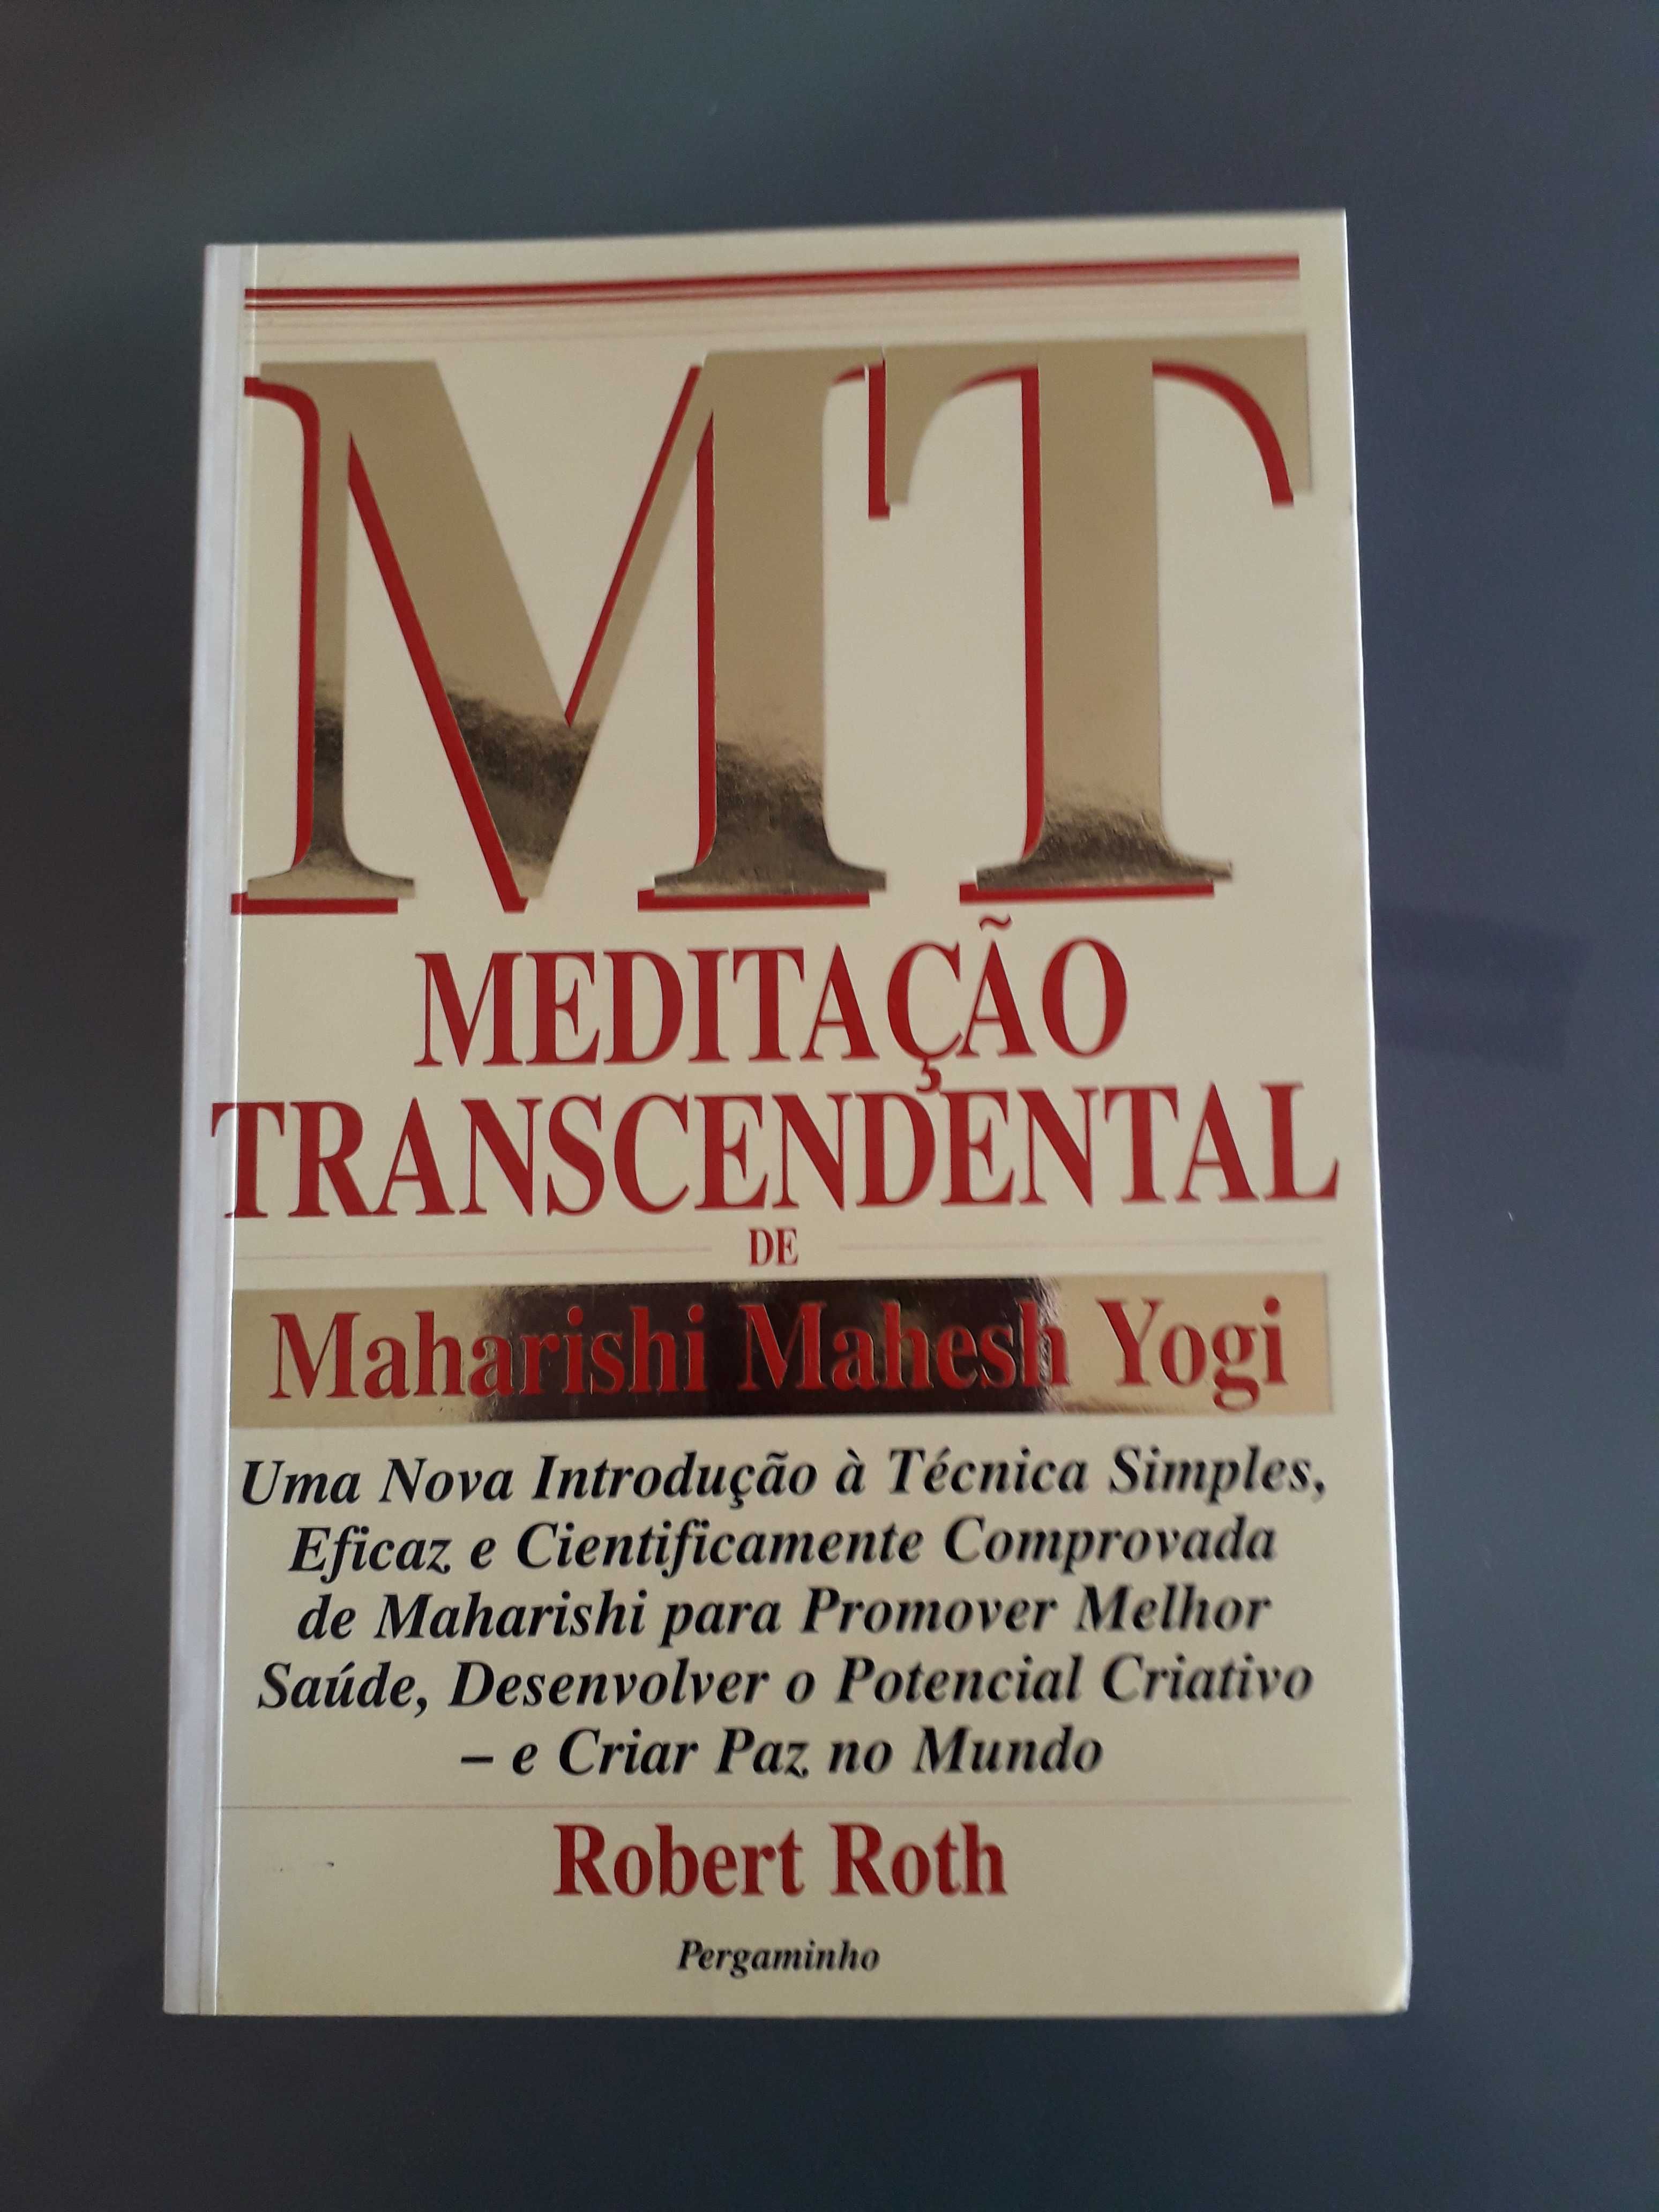 Livro "Meditação Transcendental"